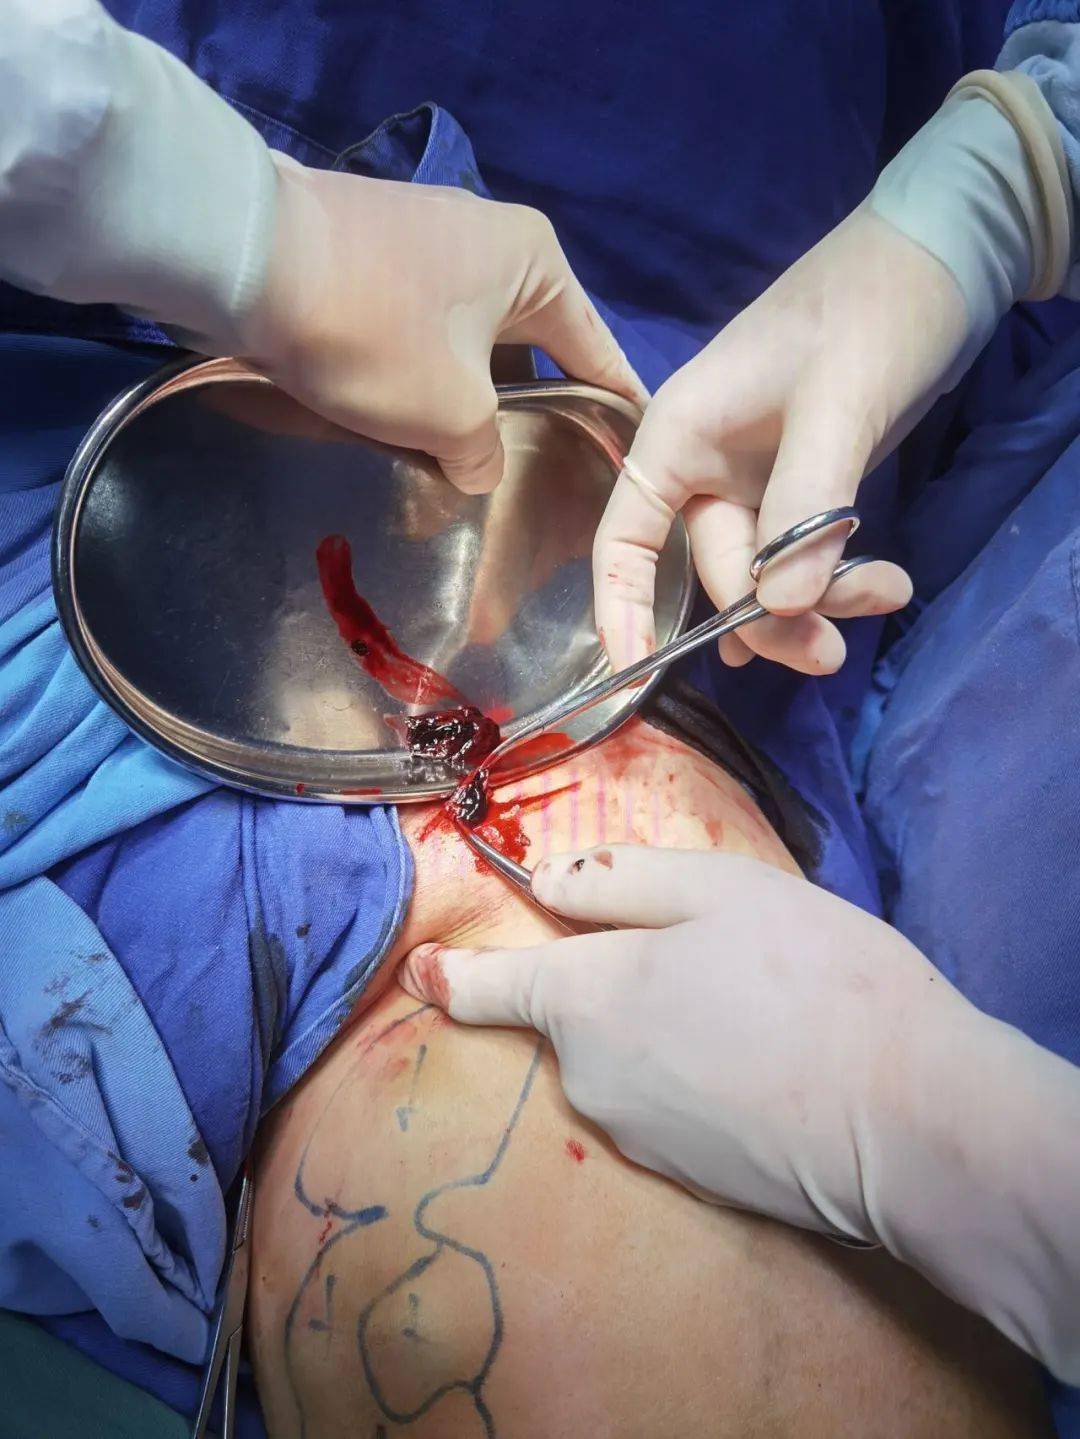 静脉滤器植入术过程图图片